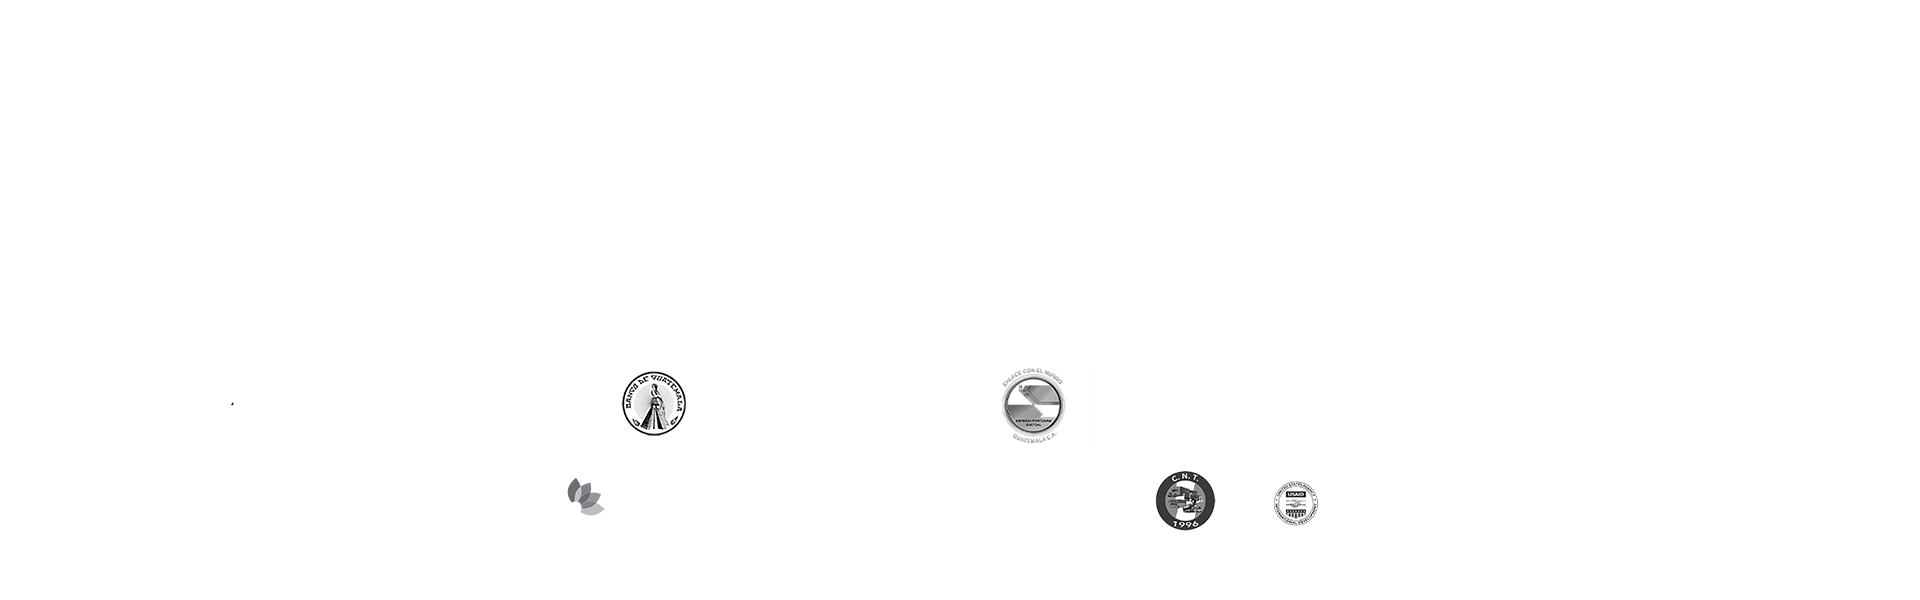 Logos Interinstitucionales GNSD